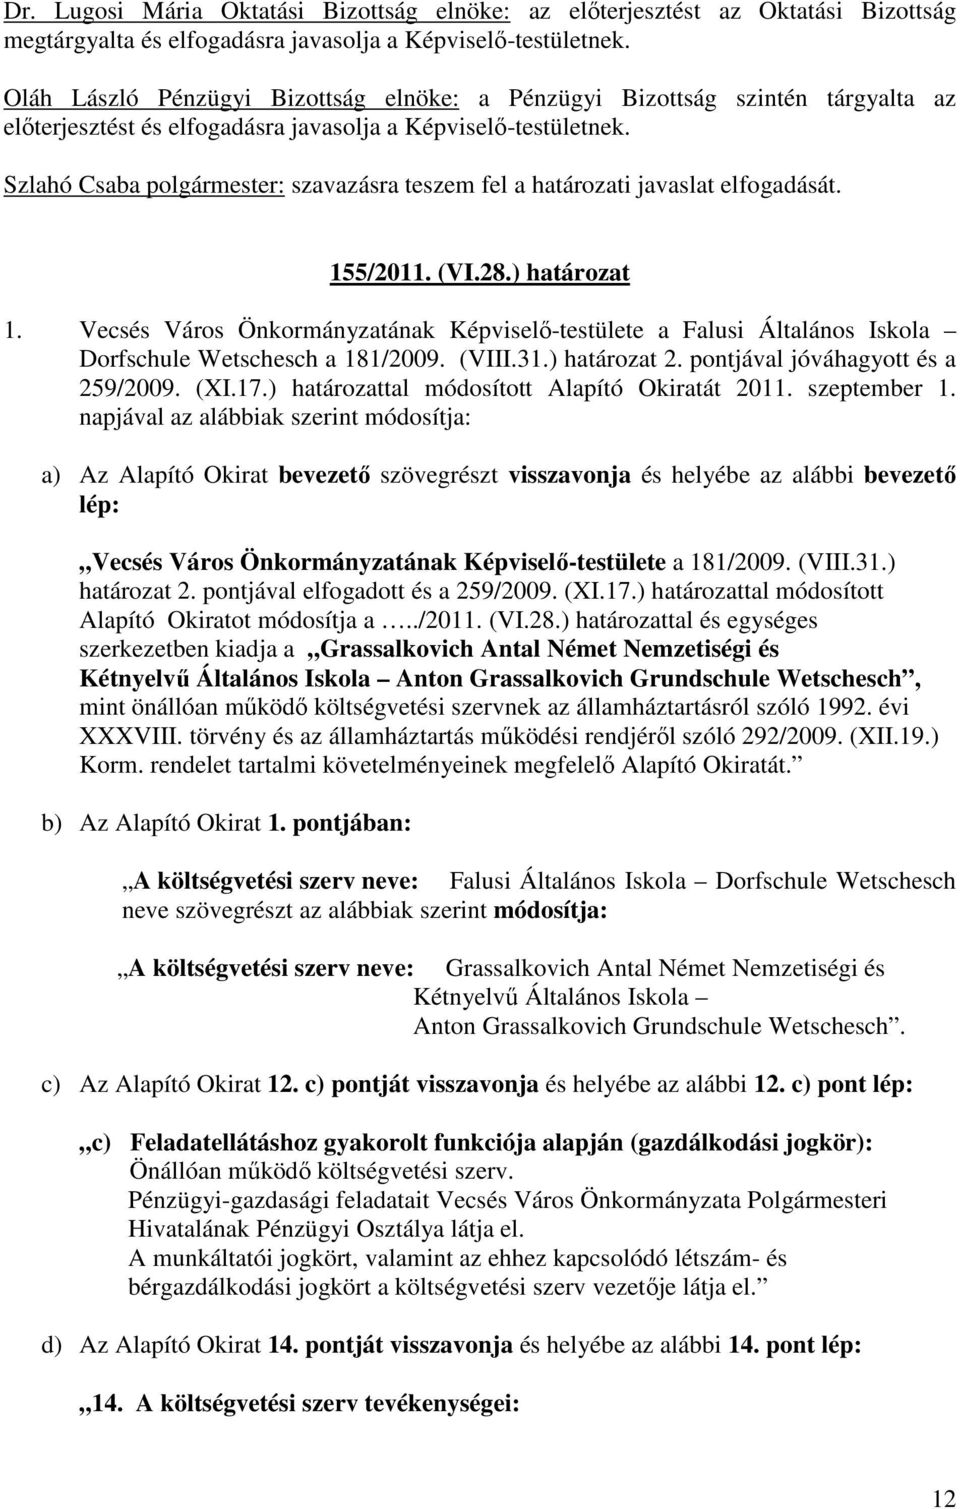 Szlahó Csaba polgármester: szavazásra teszem fel a határozati javaslat elfogadását. 155/2011. (VI.28.) határozat 1.